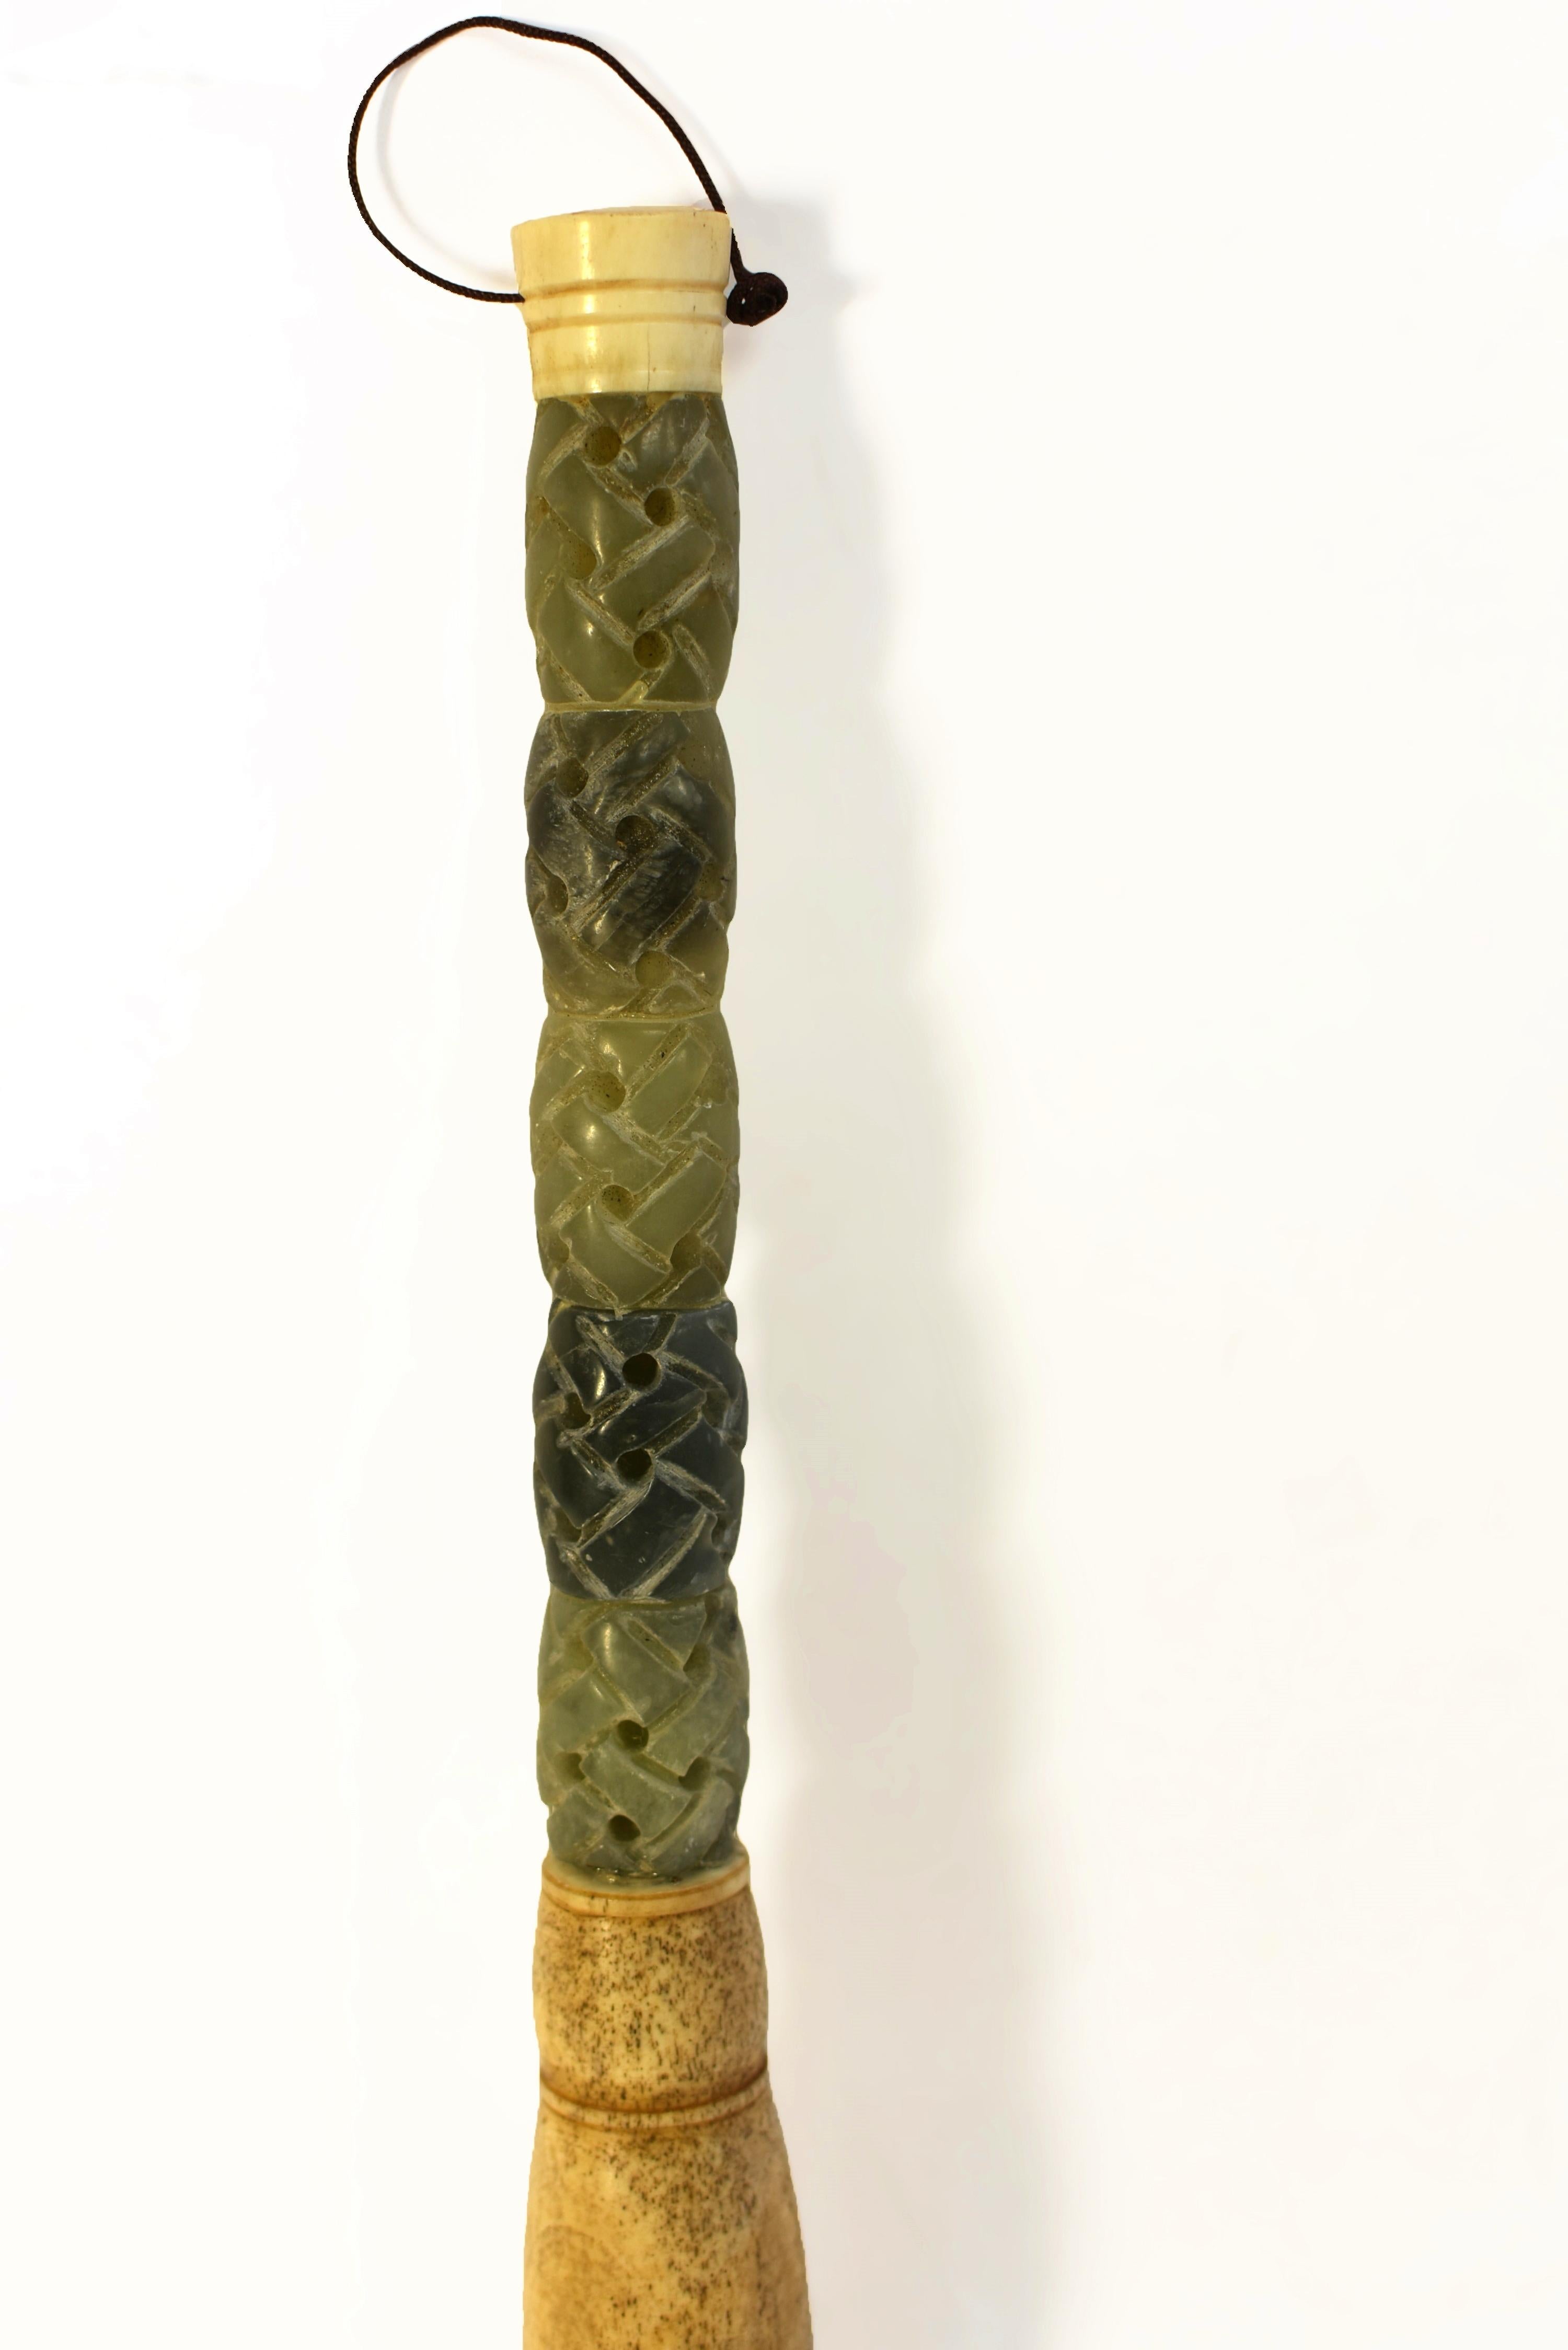 Un grand pinceau de 14 pouces avec des perles de jade sculptées à la main en forme de panier. Jade naturel dans différentes nuances de vert allant du plus clair au plus foncé. Virole en os et crin de cheval. Une merveilleuse pièce de collection pour